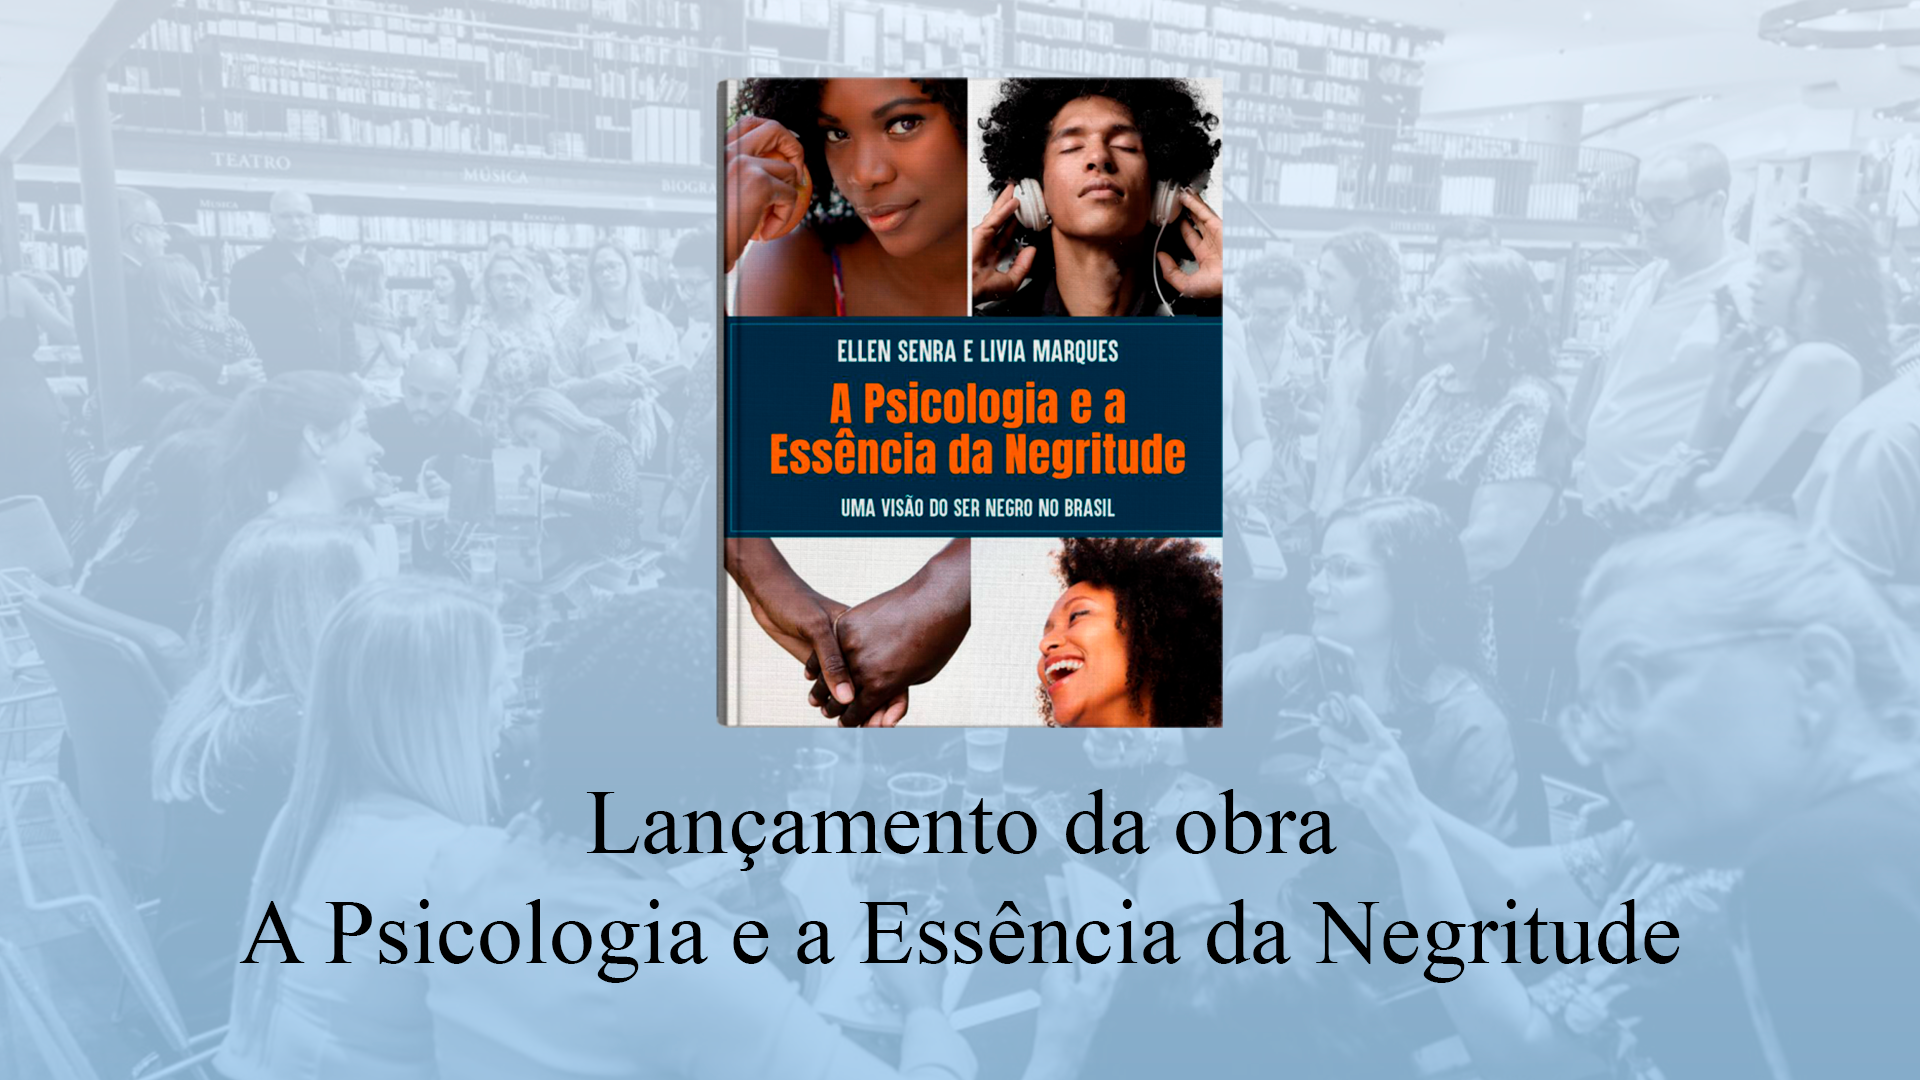 You are currently viewing Lançamento da obra A Psicologia e a Essência da Negritude